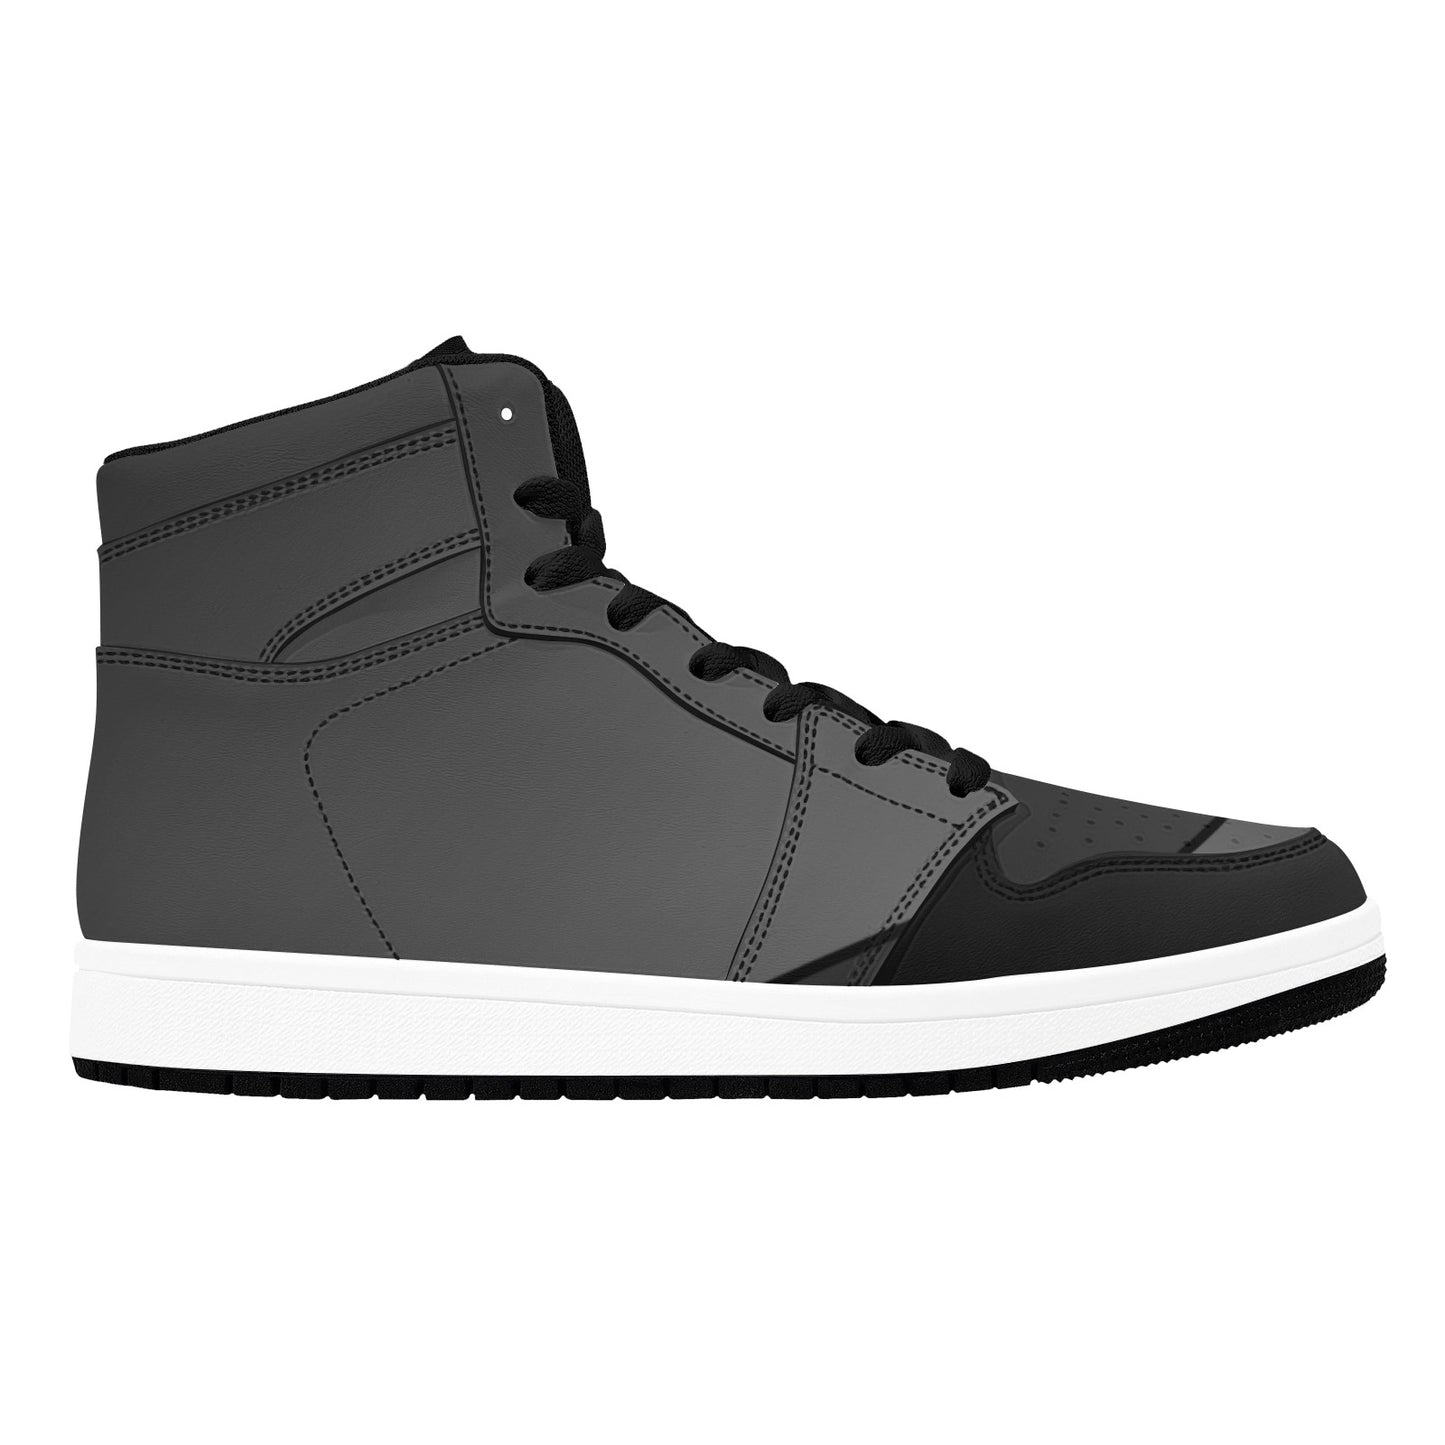 Black High Top Sneakers  Black Geometric Lines HIgh Top Sneakers Men's High Top Sneakers